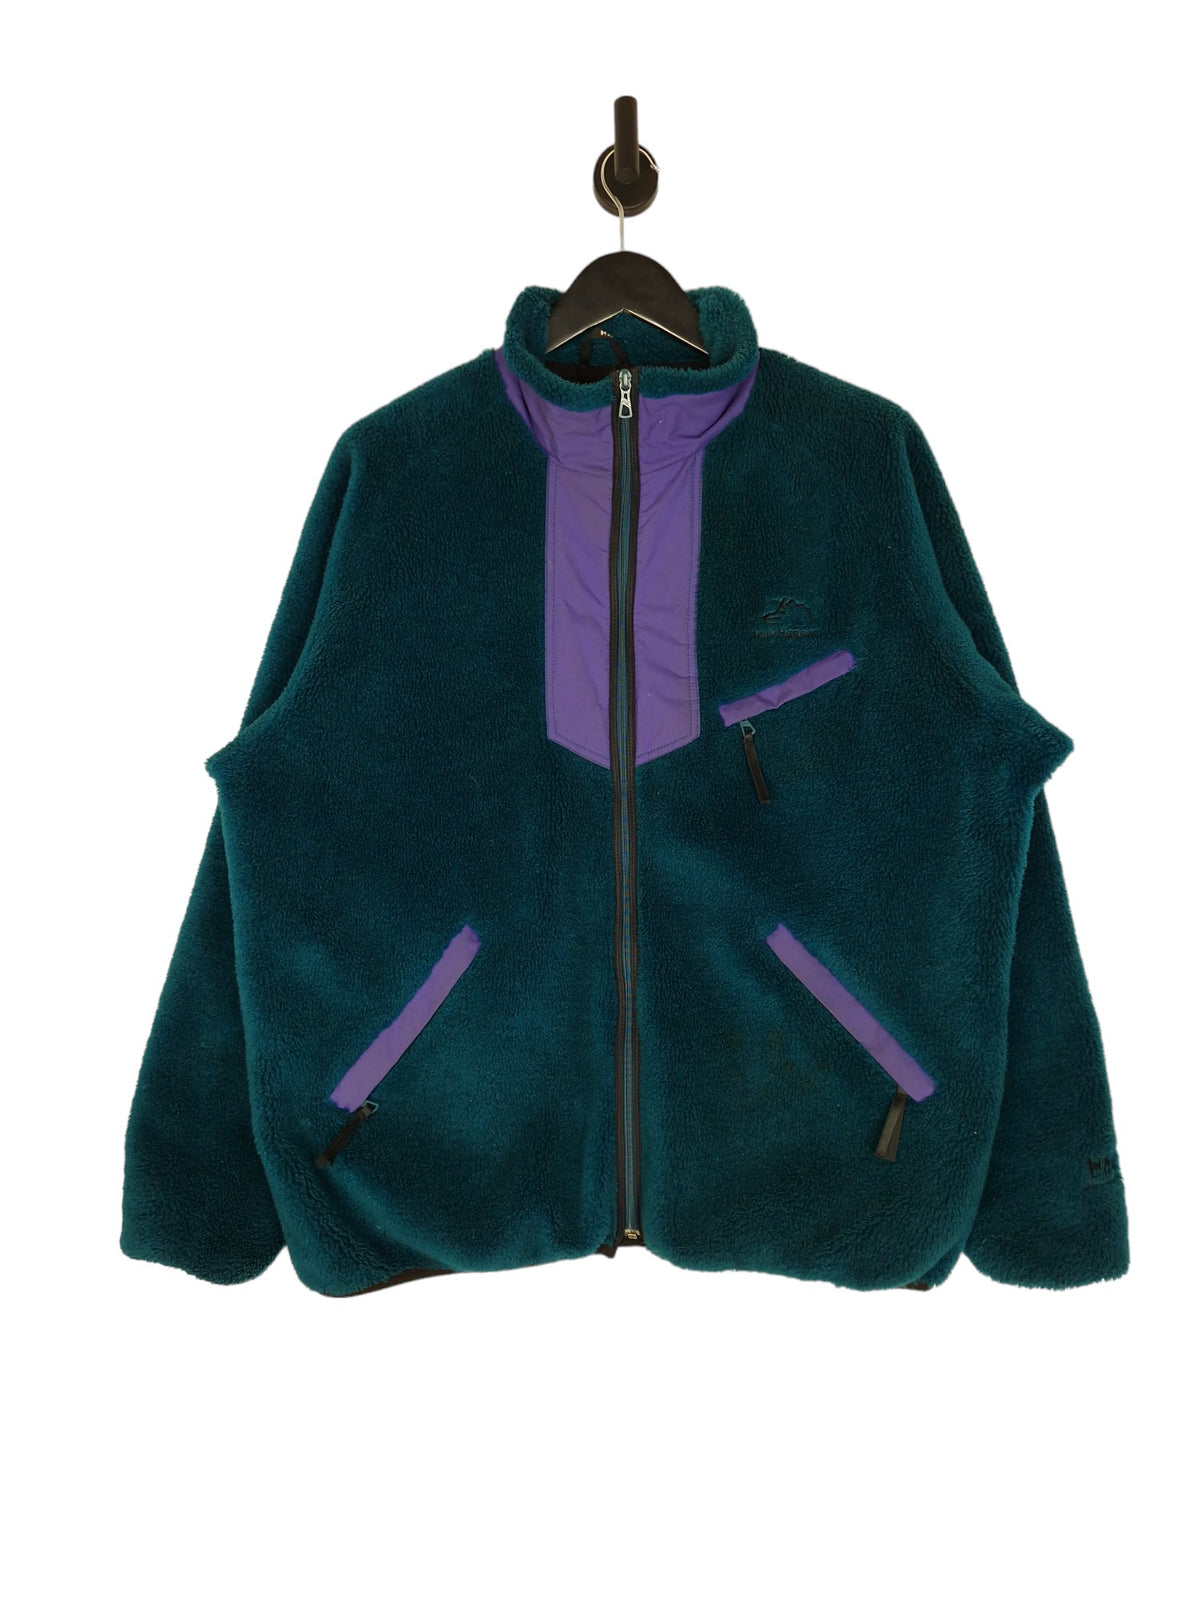 90's Helly Hansen Fleece Jacket - Size XL